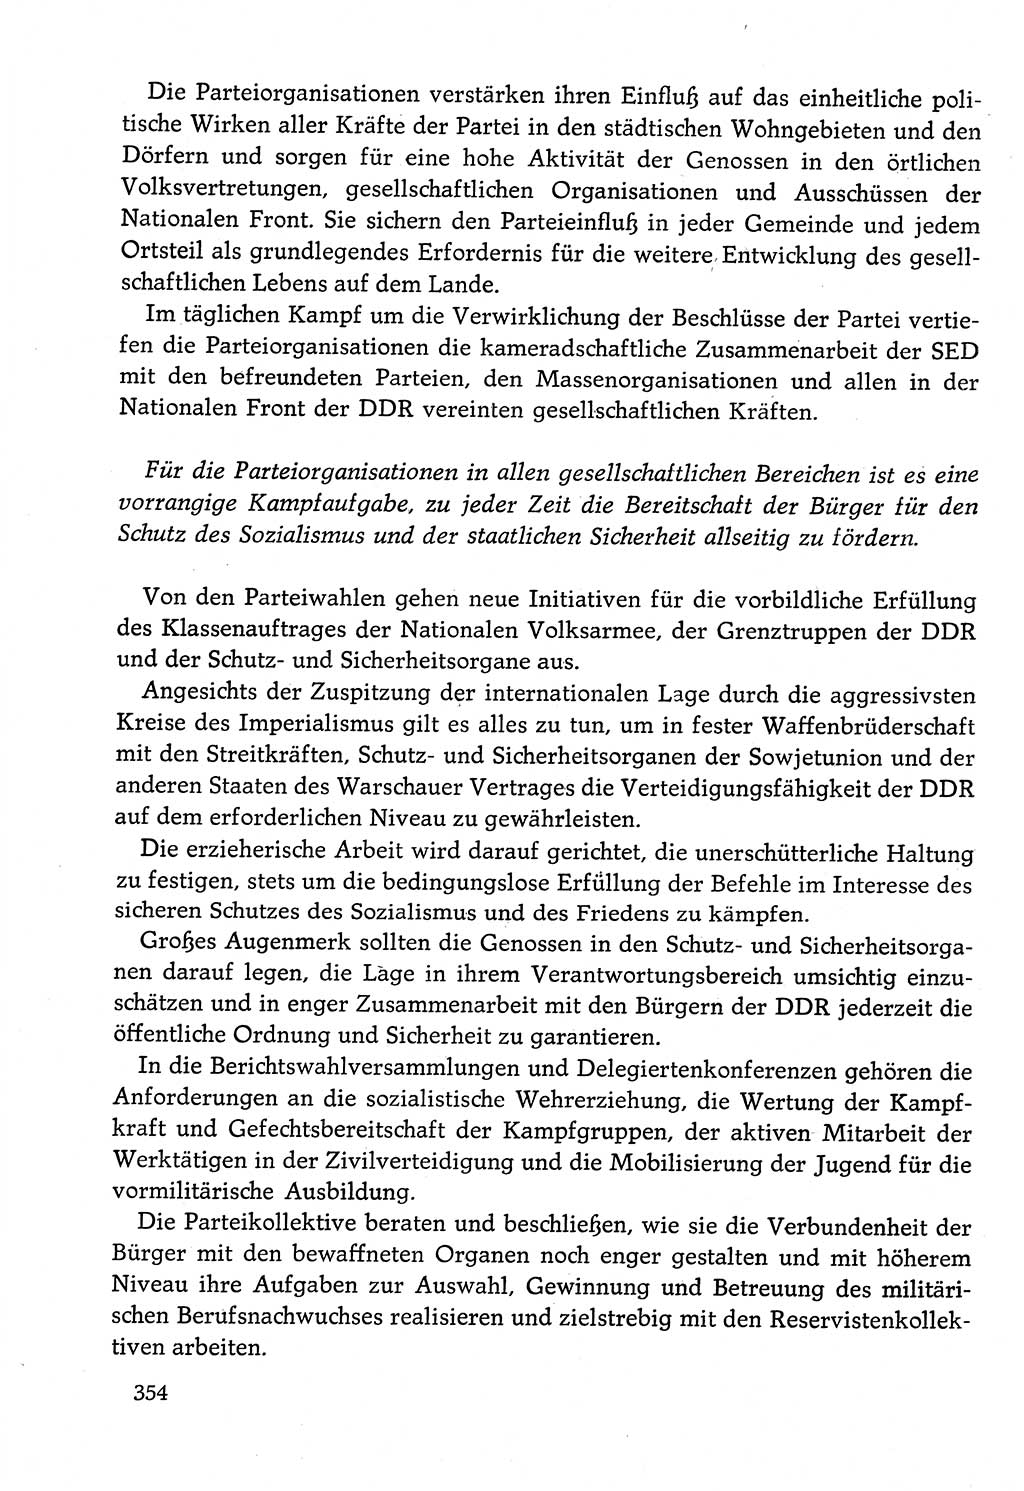 Dokumente der Sozialistischen Einheitspartei Deutschlands (SED) [Deutsche Demokratische Republik (DDR)] 1982-1983, Seite 354 (Dok. SED DDR 1982-1983, S. 354)